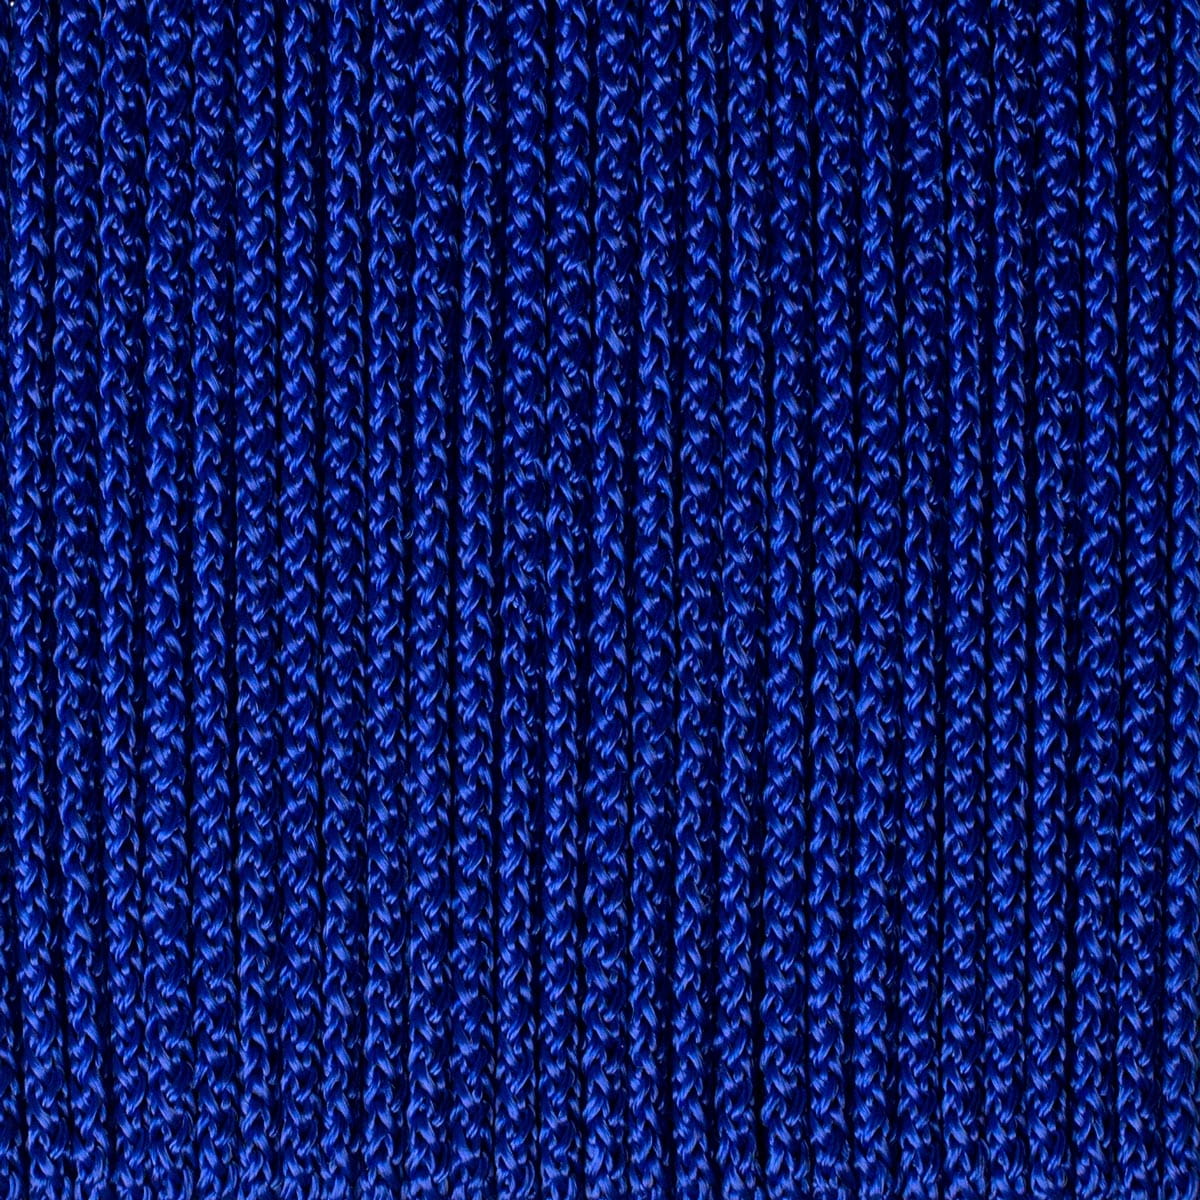 Cobalt blue polypropylene cord 7mm